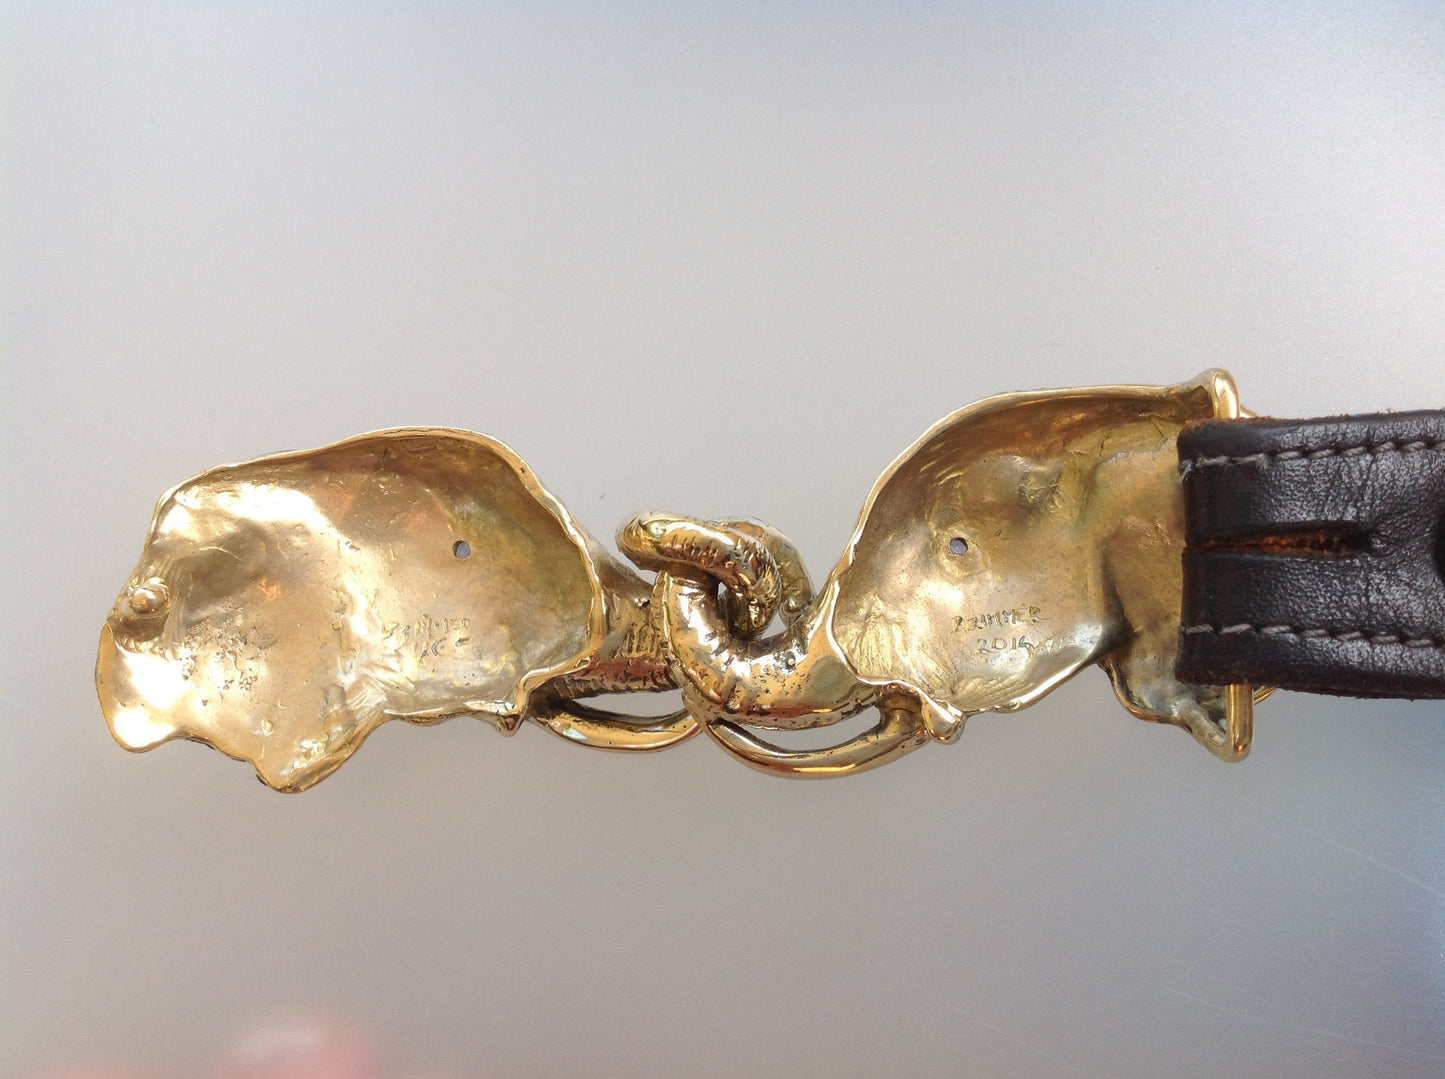 Articulating Elephants belt buckle Sculpture jewelry in bronze NO STONES in eyes.  Zimmer jewelry